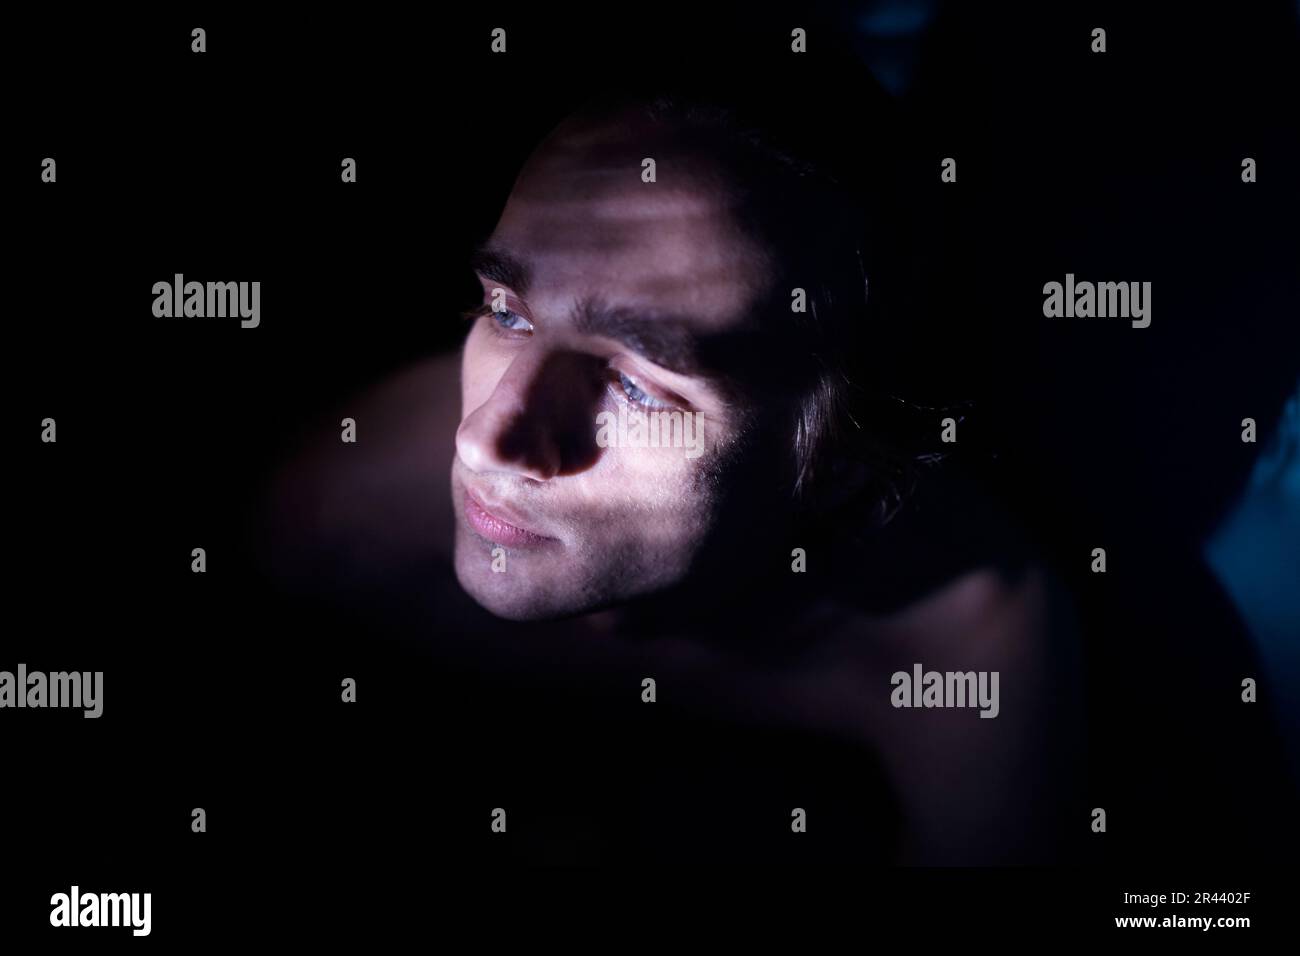 Ritratto di un uomo in una stanza buia, illuminato da un raggio di luce Foto Stock